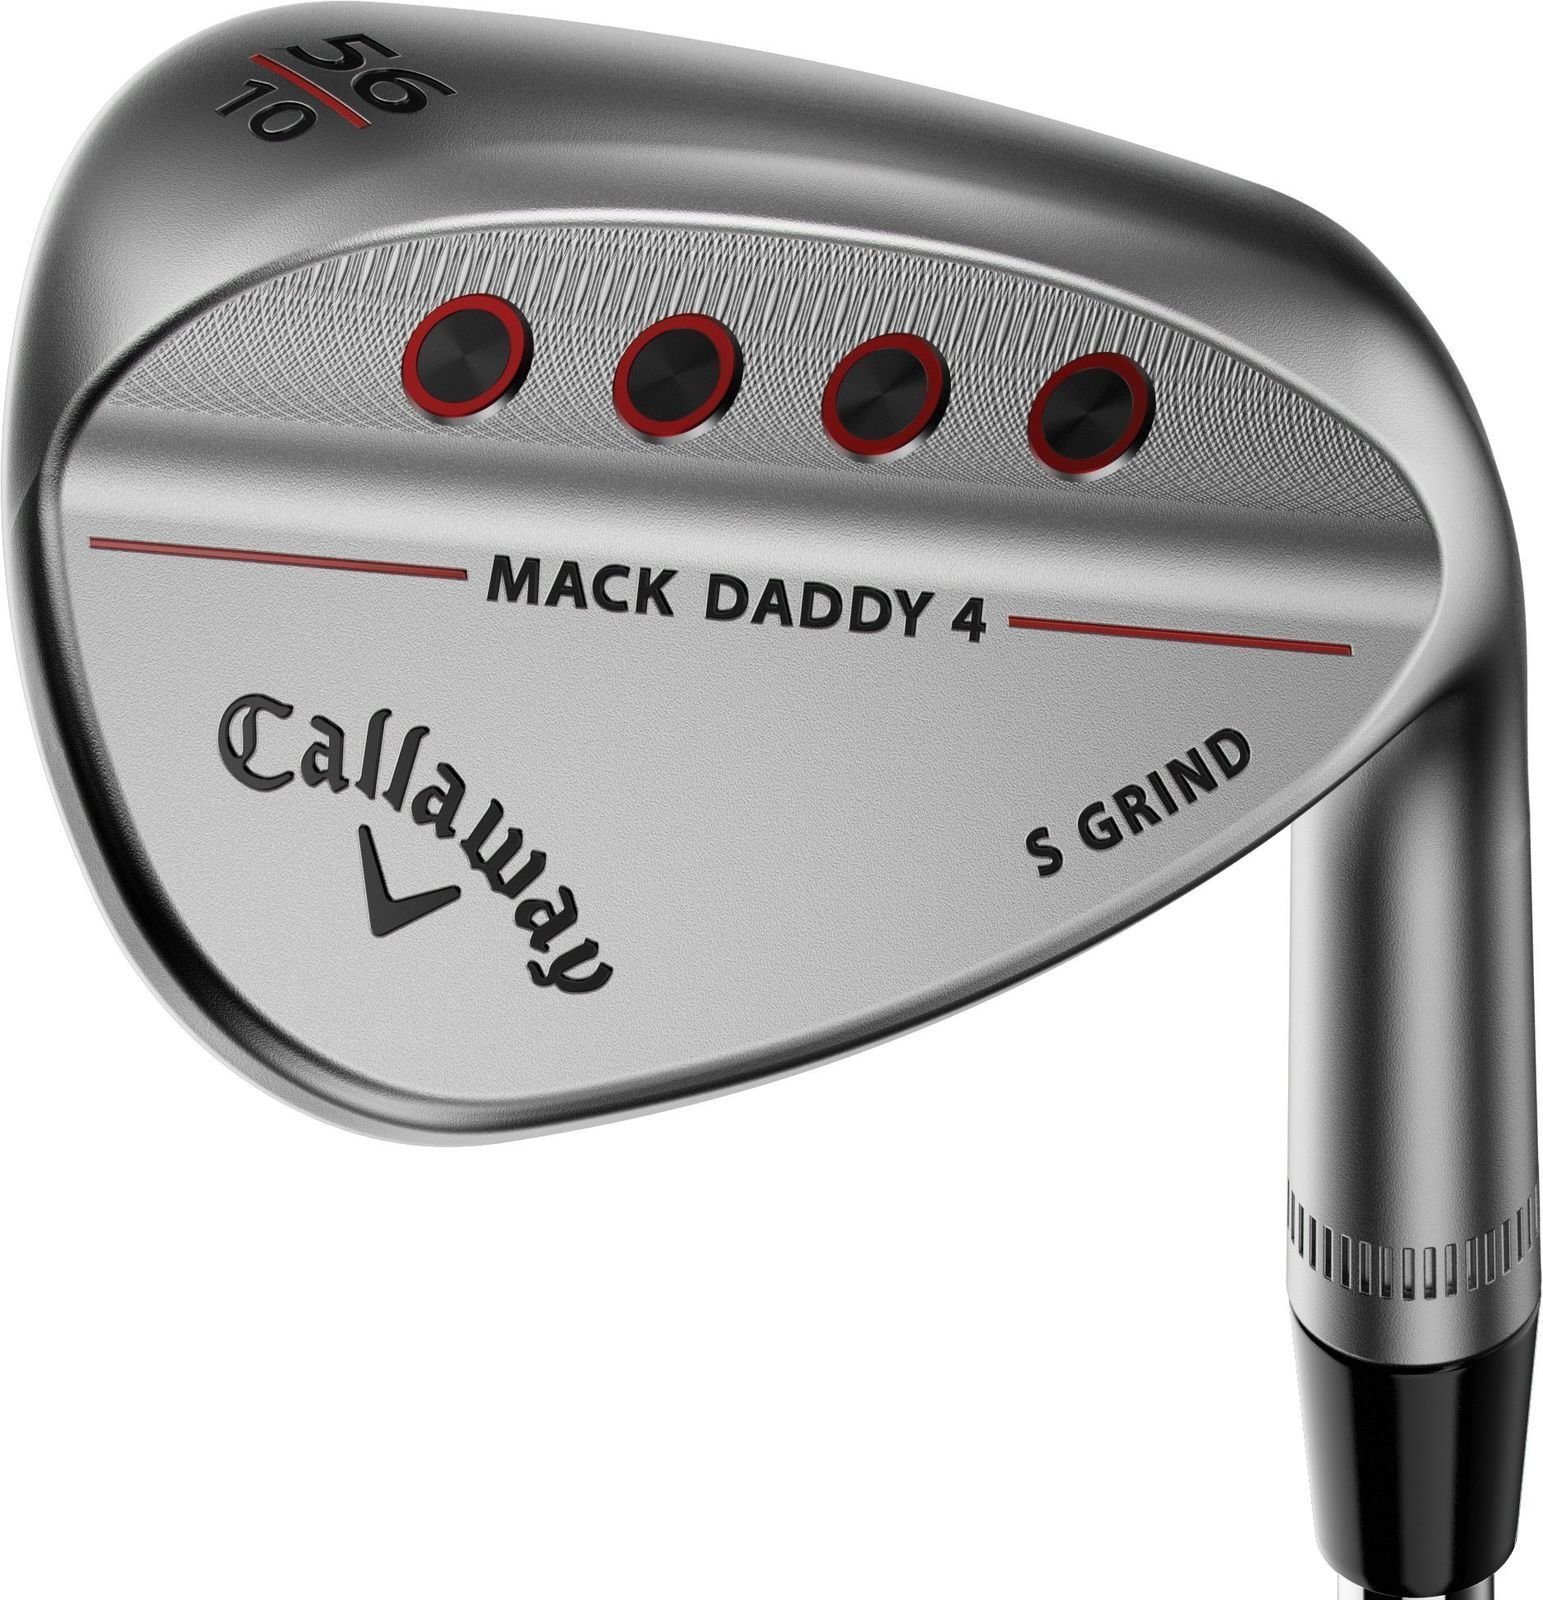 Club de golf - wedge Callaway Mack Daddy 4 Chrome Wedge 56-10 S-Grind gauchier